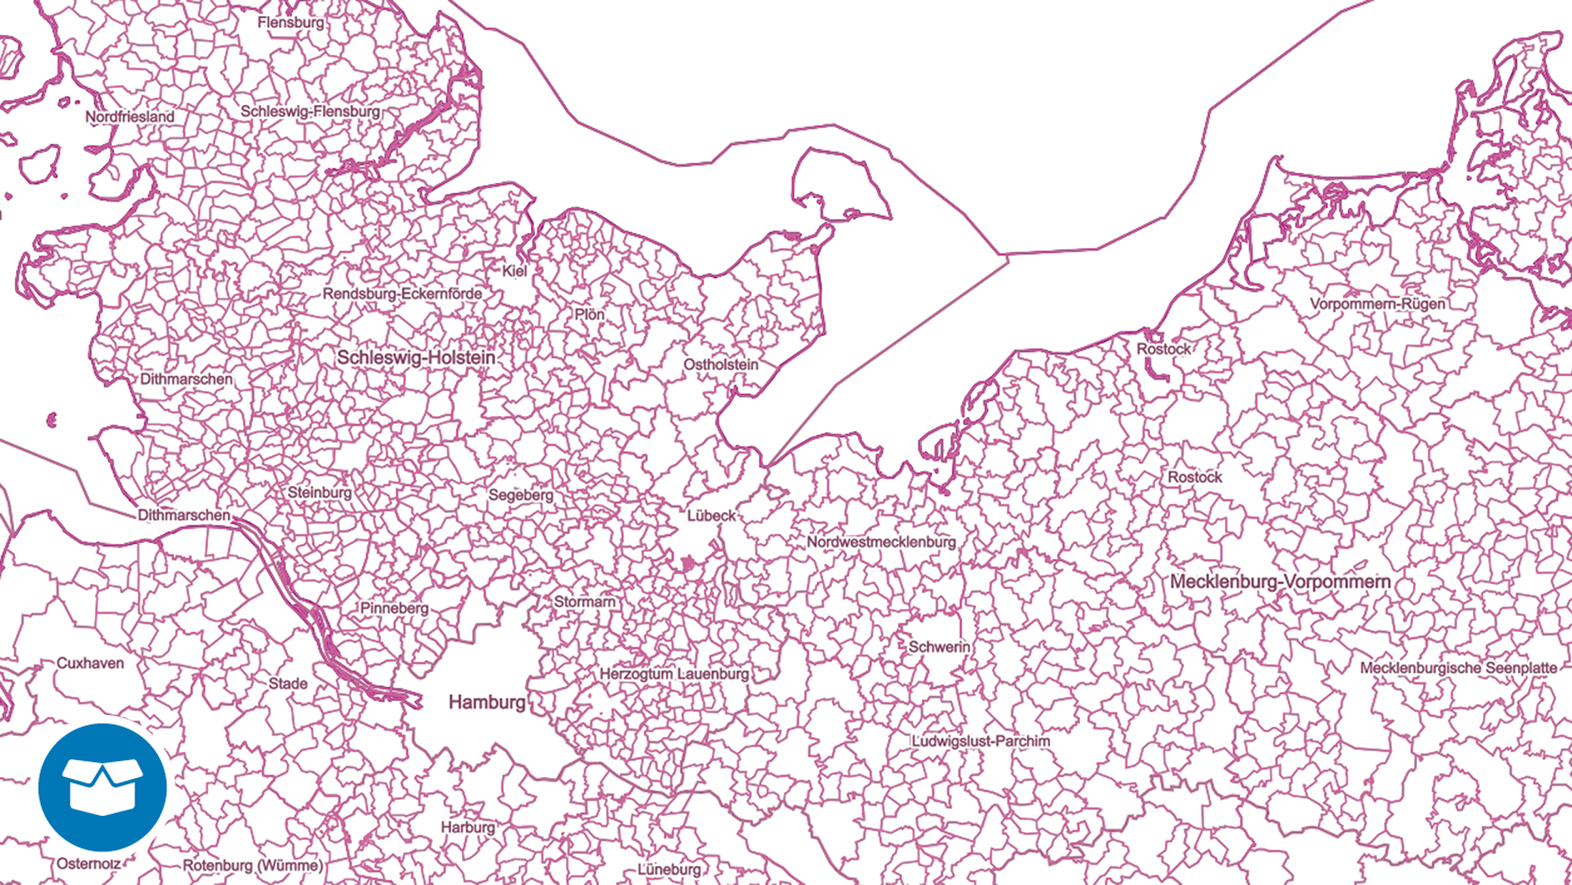 Bild zeigt einen Ausschnitt aus dem Datensatz der Verwaltungsgebiete im Maßstab 1 : 250 000